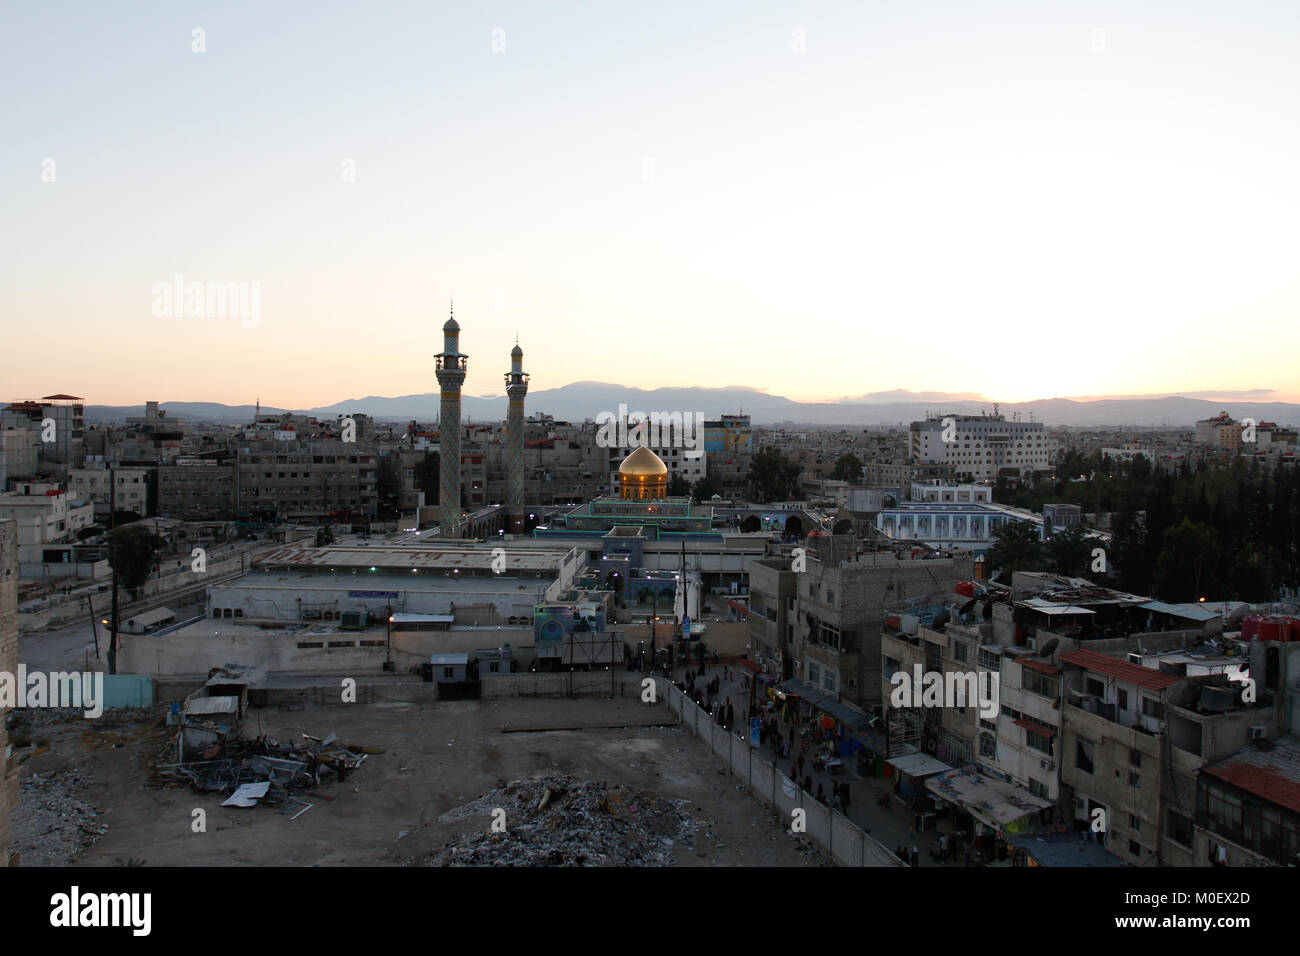 Colpo esterno per Sayeda Zeinab santuario in Damasco Capitale della Siria, che mostra il santuario con una cupola dorata e due minareti e alcuni residenti Foto Stock